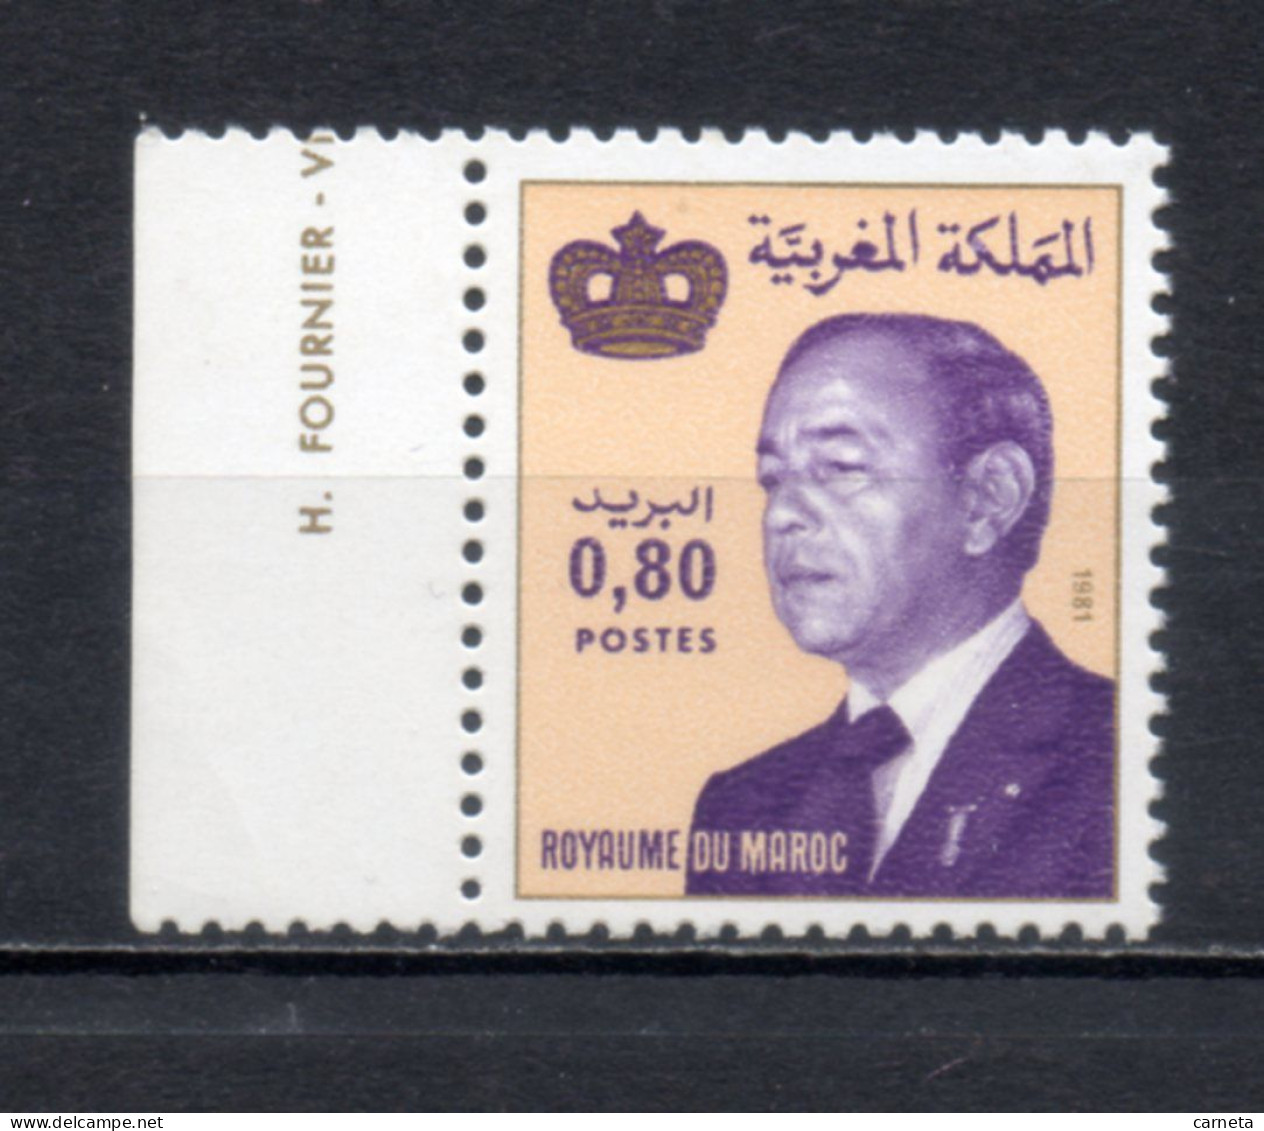 MAROC N°  917   NEUF SANS CHARNIERE  COTE  0.50€      ROI HASSAN II - Marokko (1956-...)